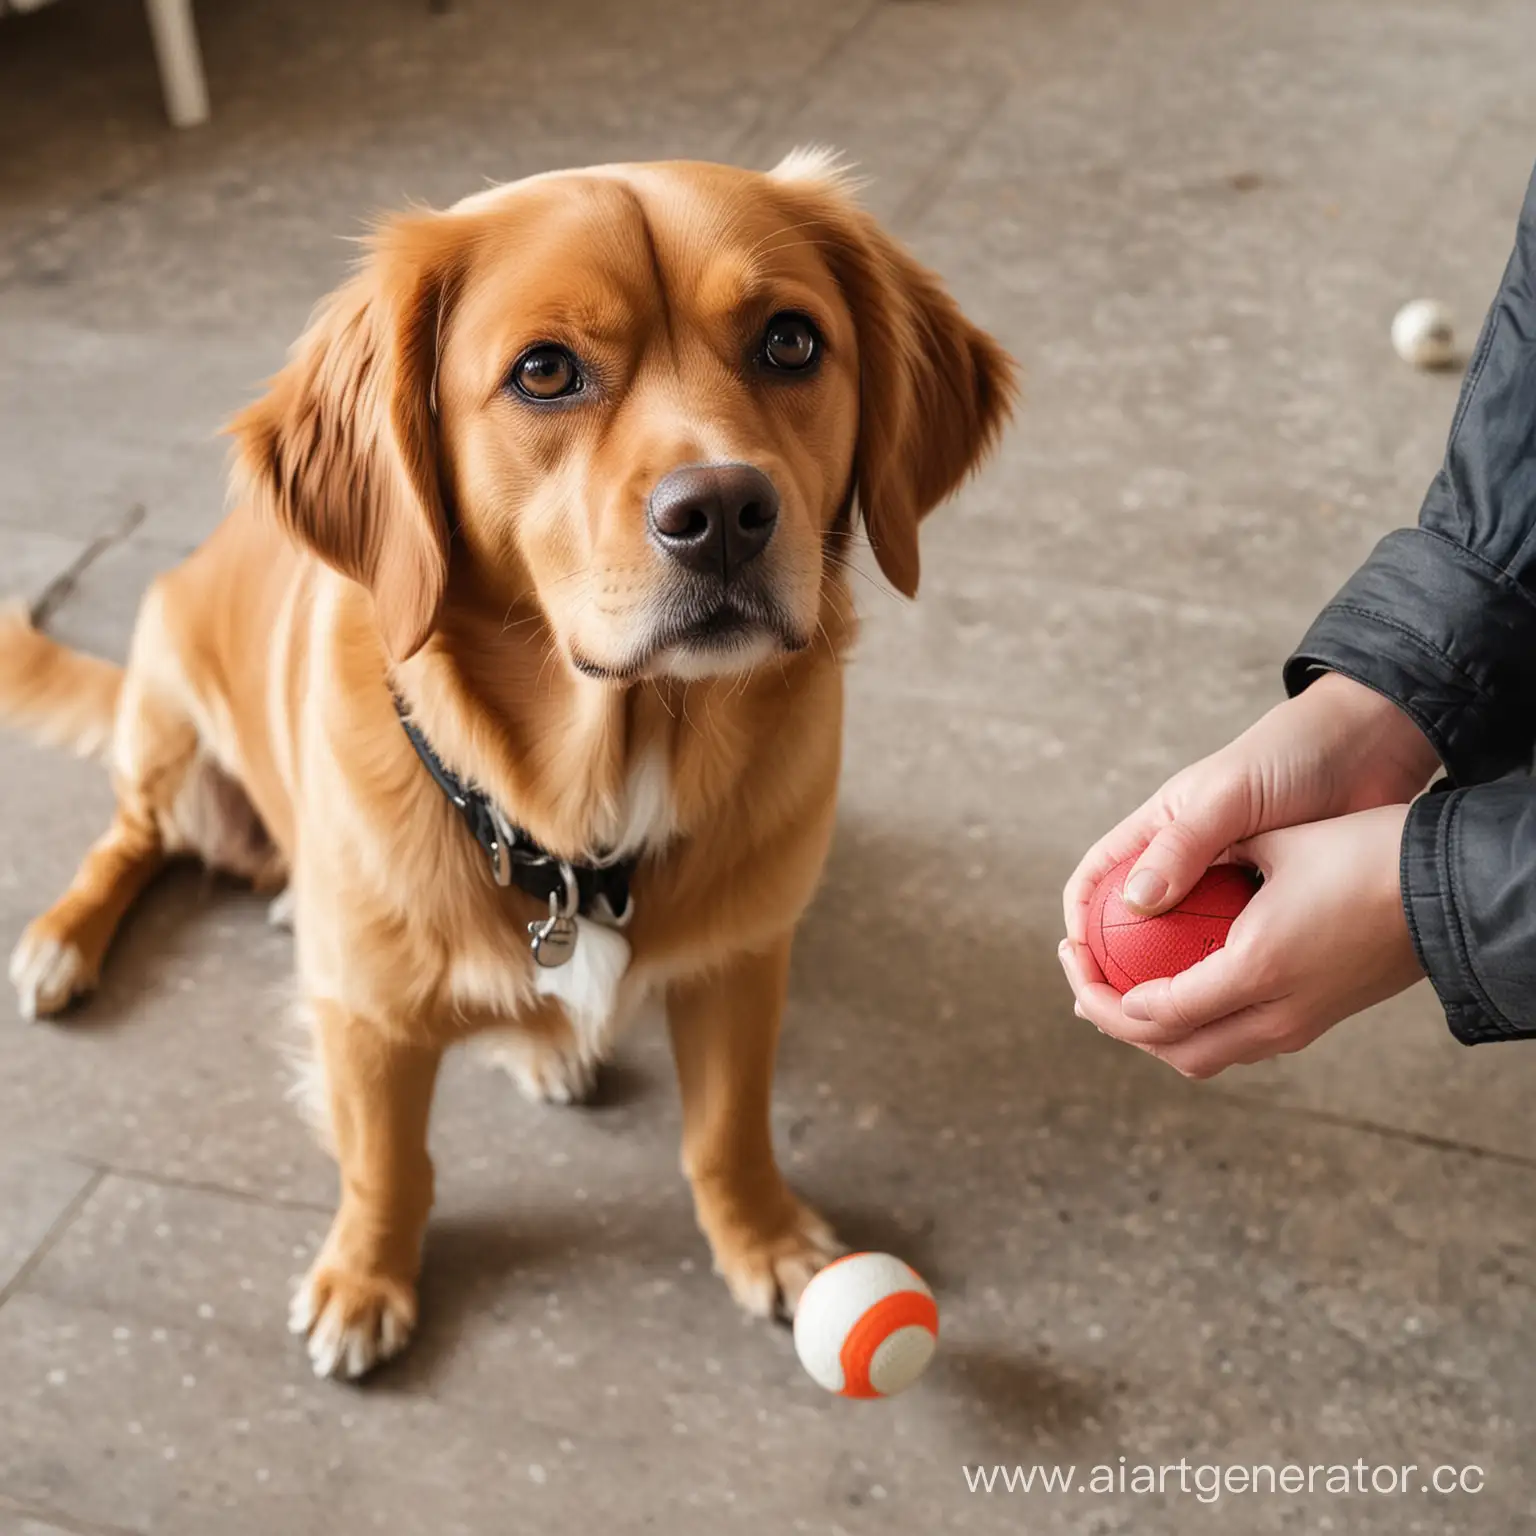 собака,сидящая напротив человека,у человека в руке мячик,собака смотрит на мячик